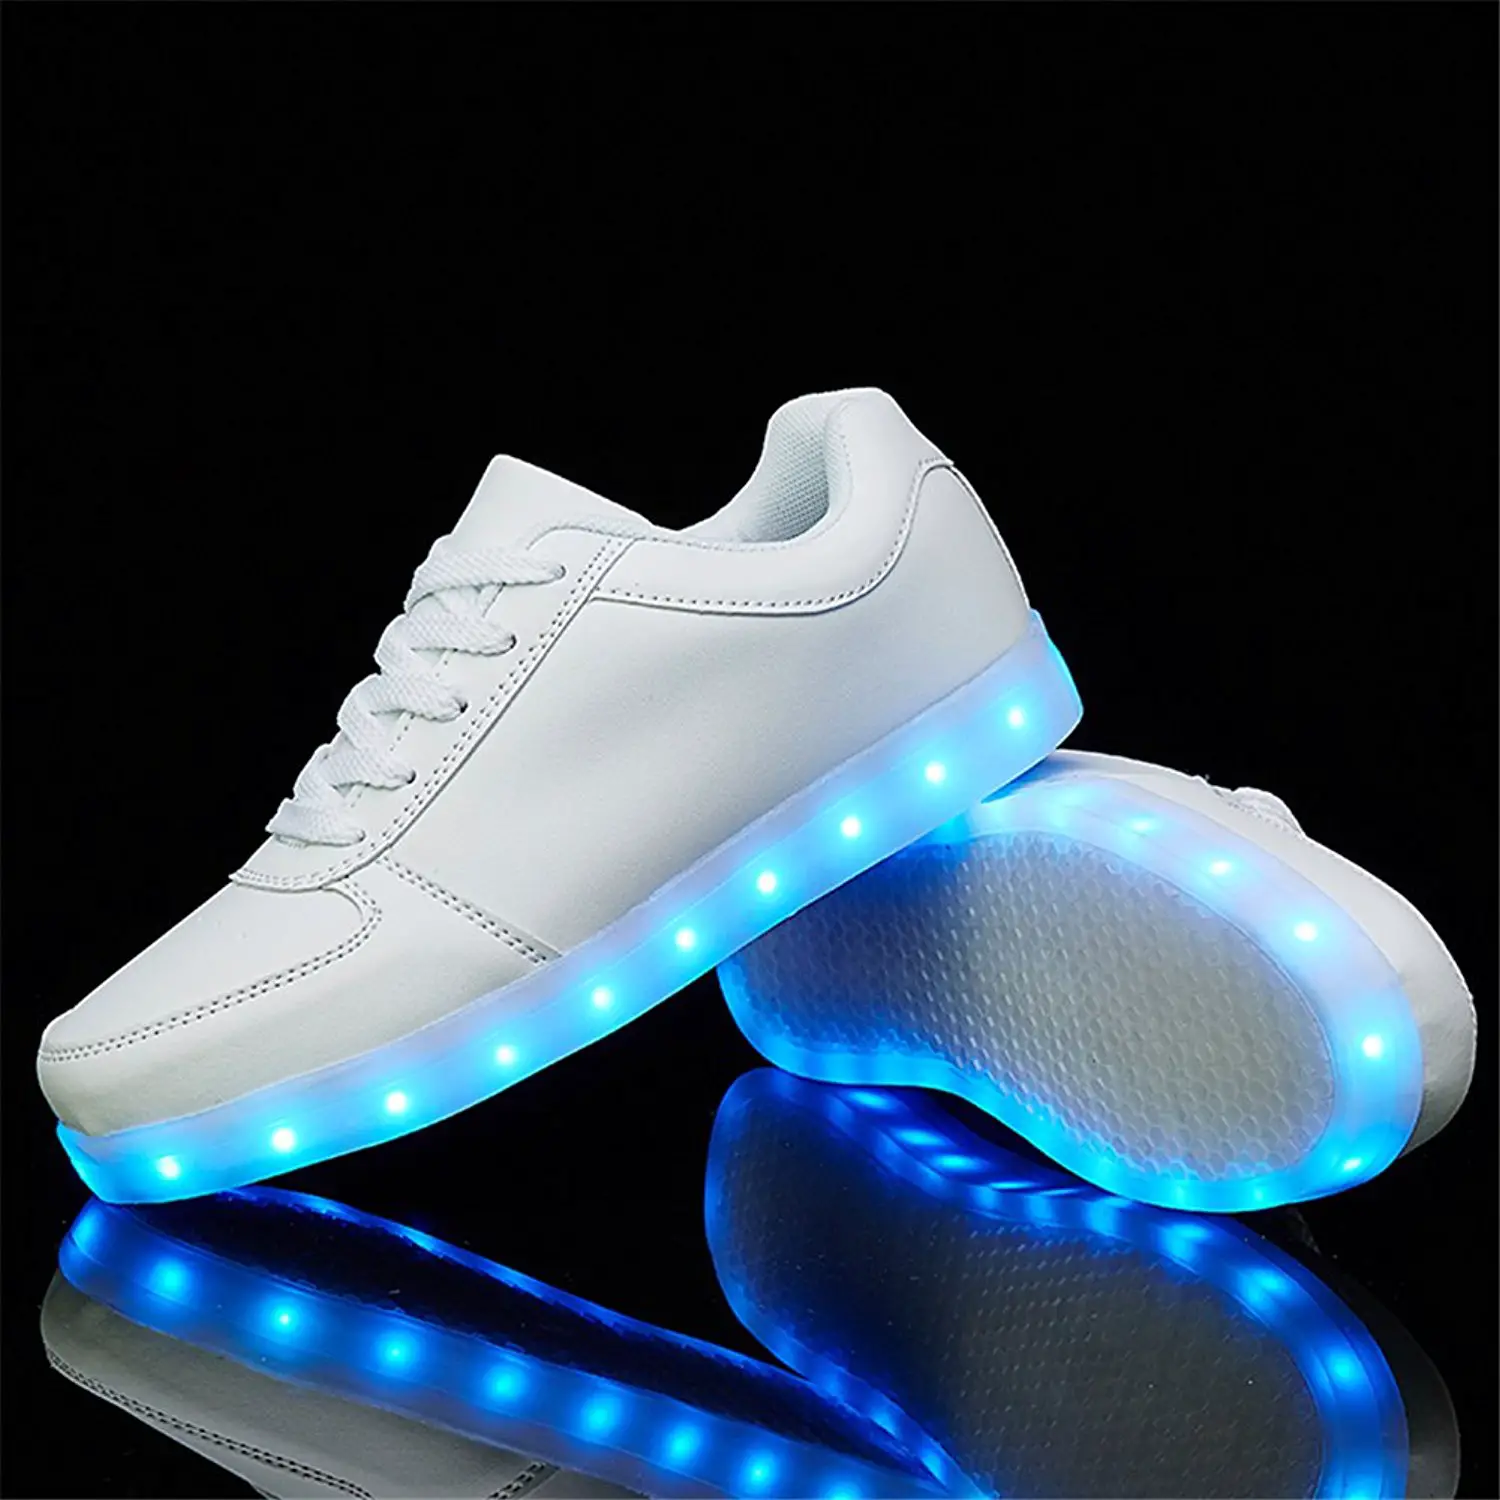 Aliexpress.com : Buy Fashion Luminous Sneakers Women LED Shoes Casual ...